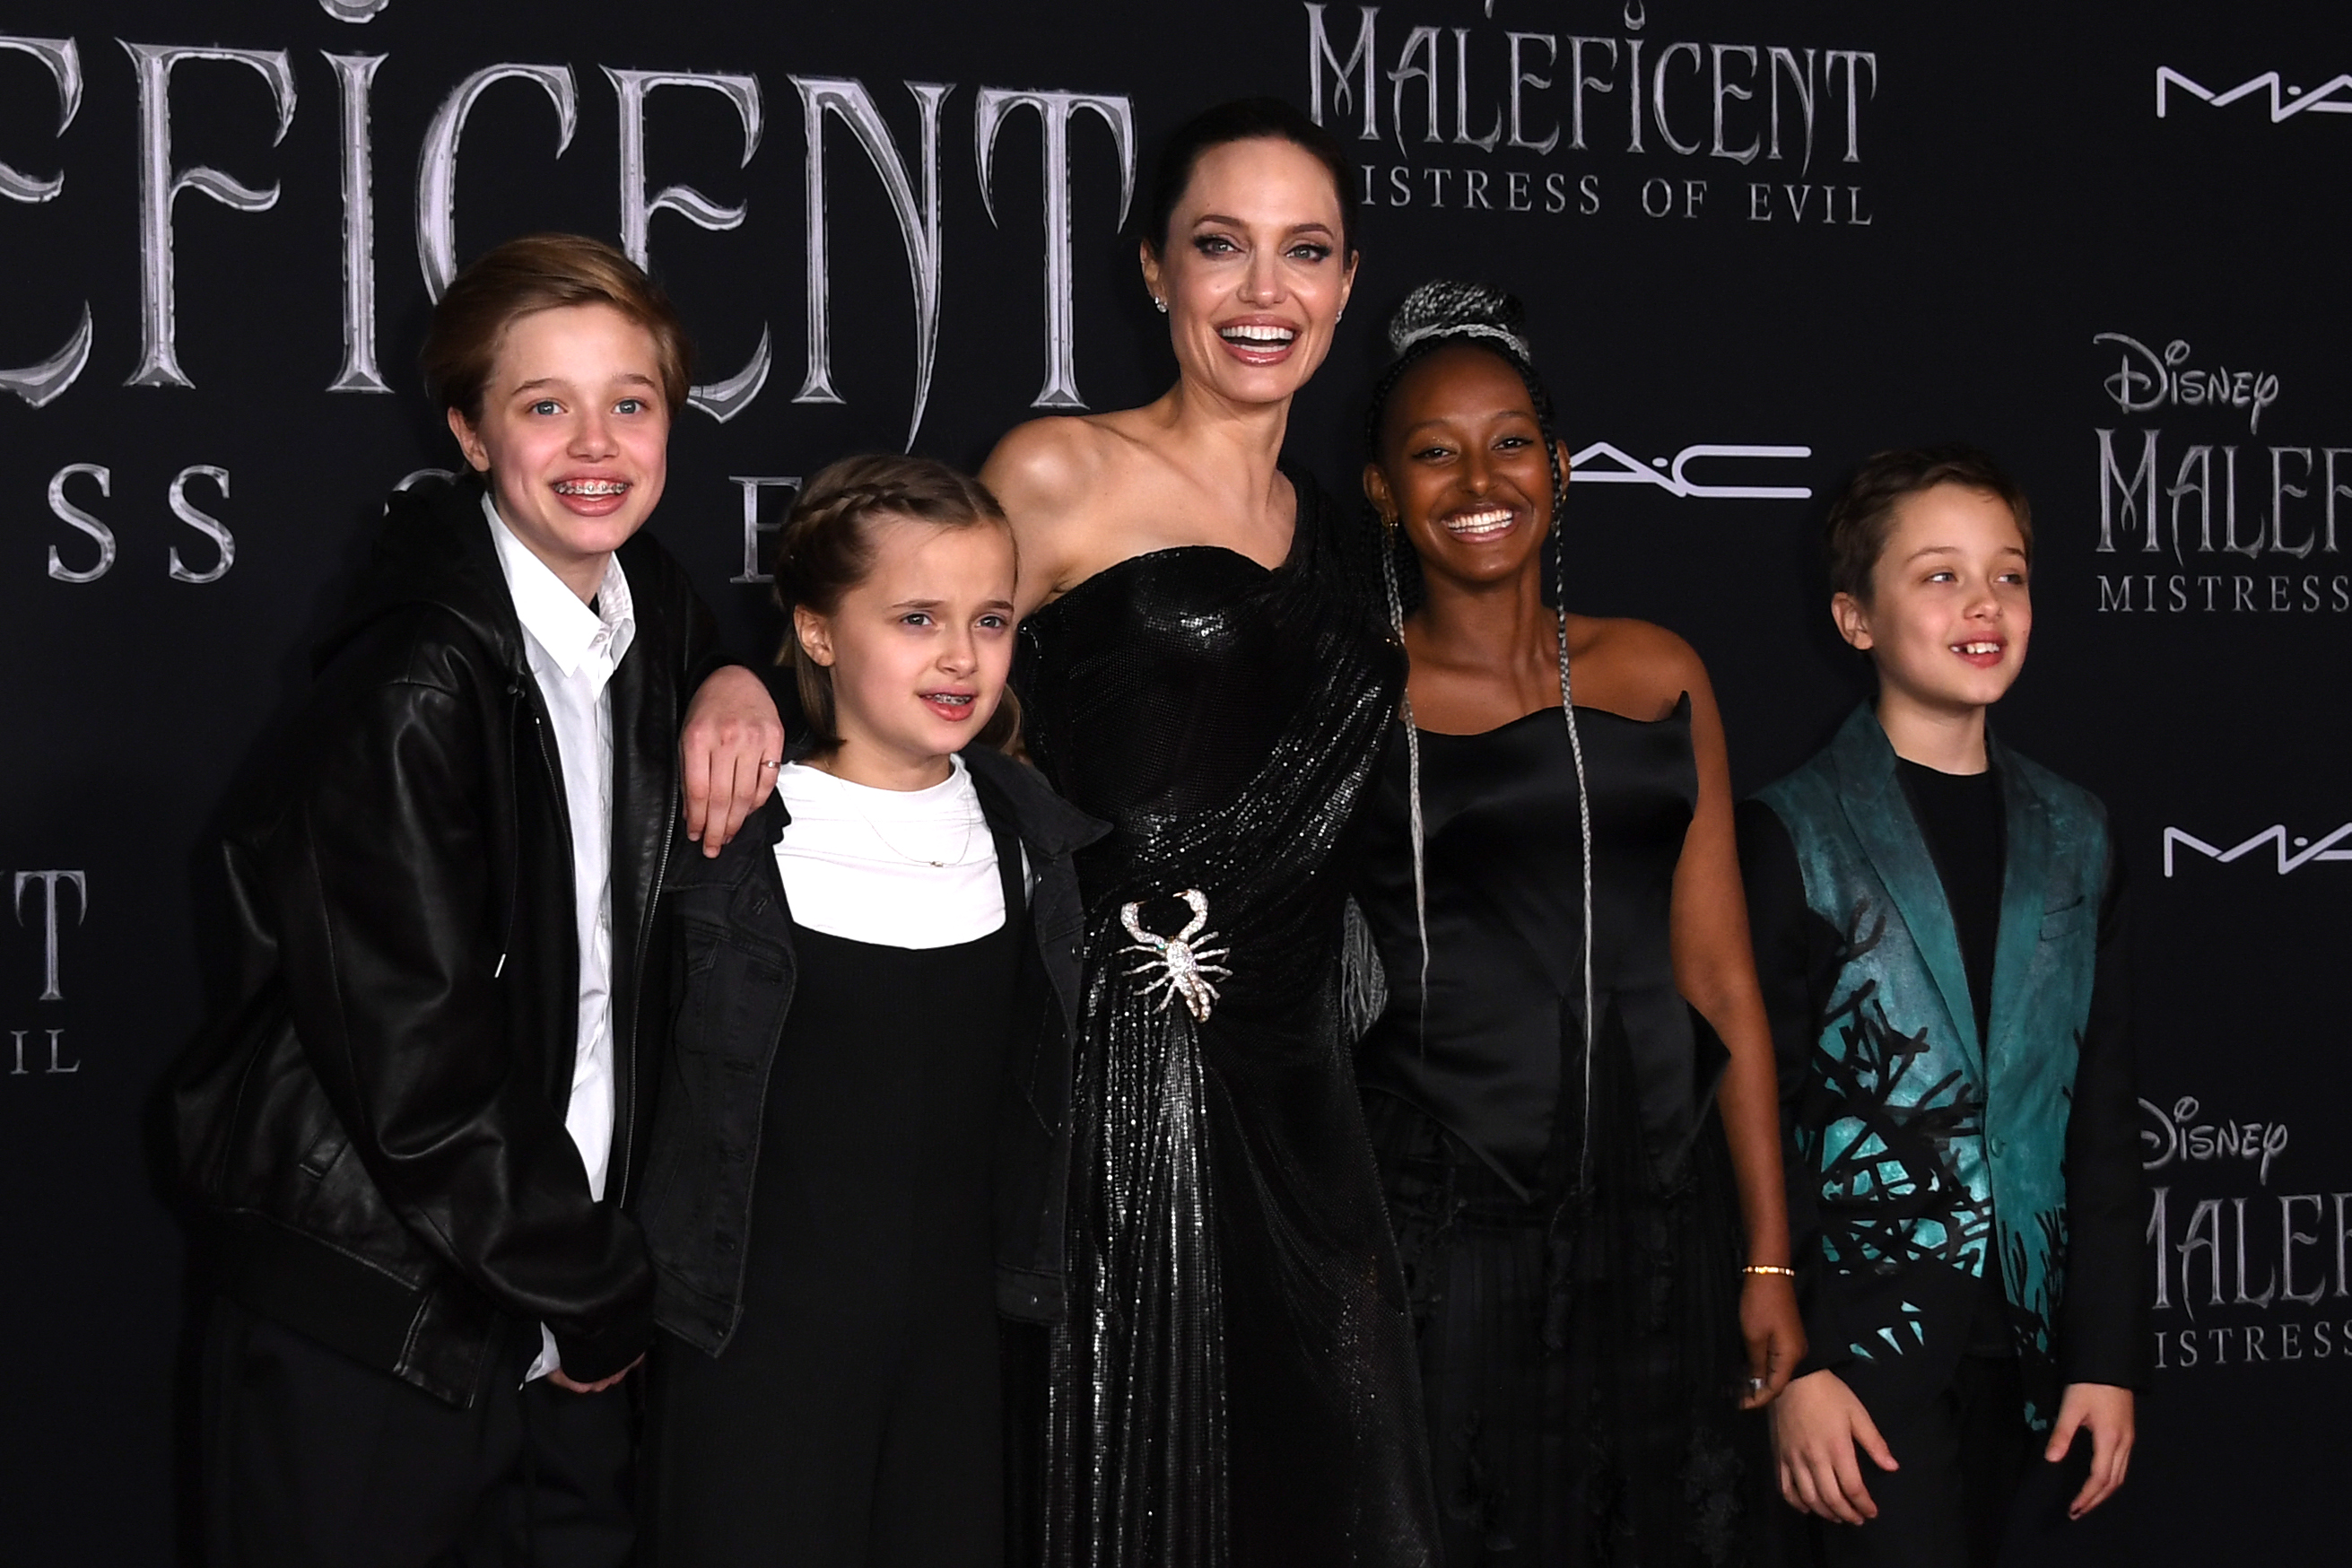 Shiloh Jolie-Pitt, Vivienne Jolie-Pitt, Zahara Jolie-Pitt et Knox Jolie-Pitt arrivent pour la première mondiale de "Maléfique" de Disney : La maîtresse du mal" de Disney à Hollywood le 30 septembre 2019 | Source : Getty Images